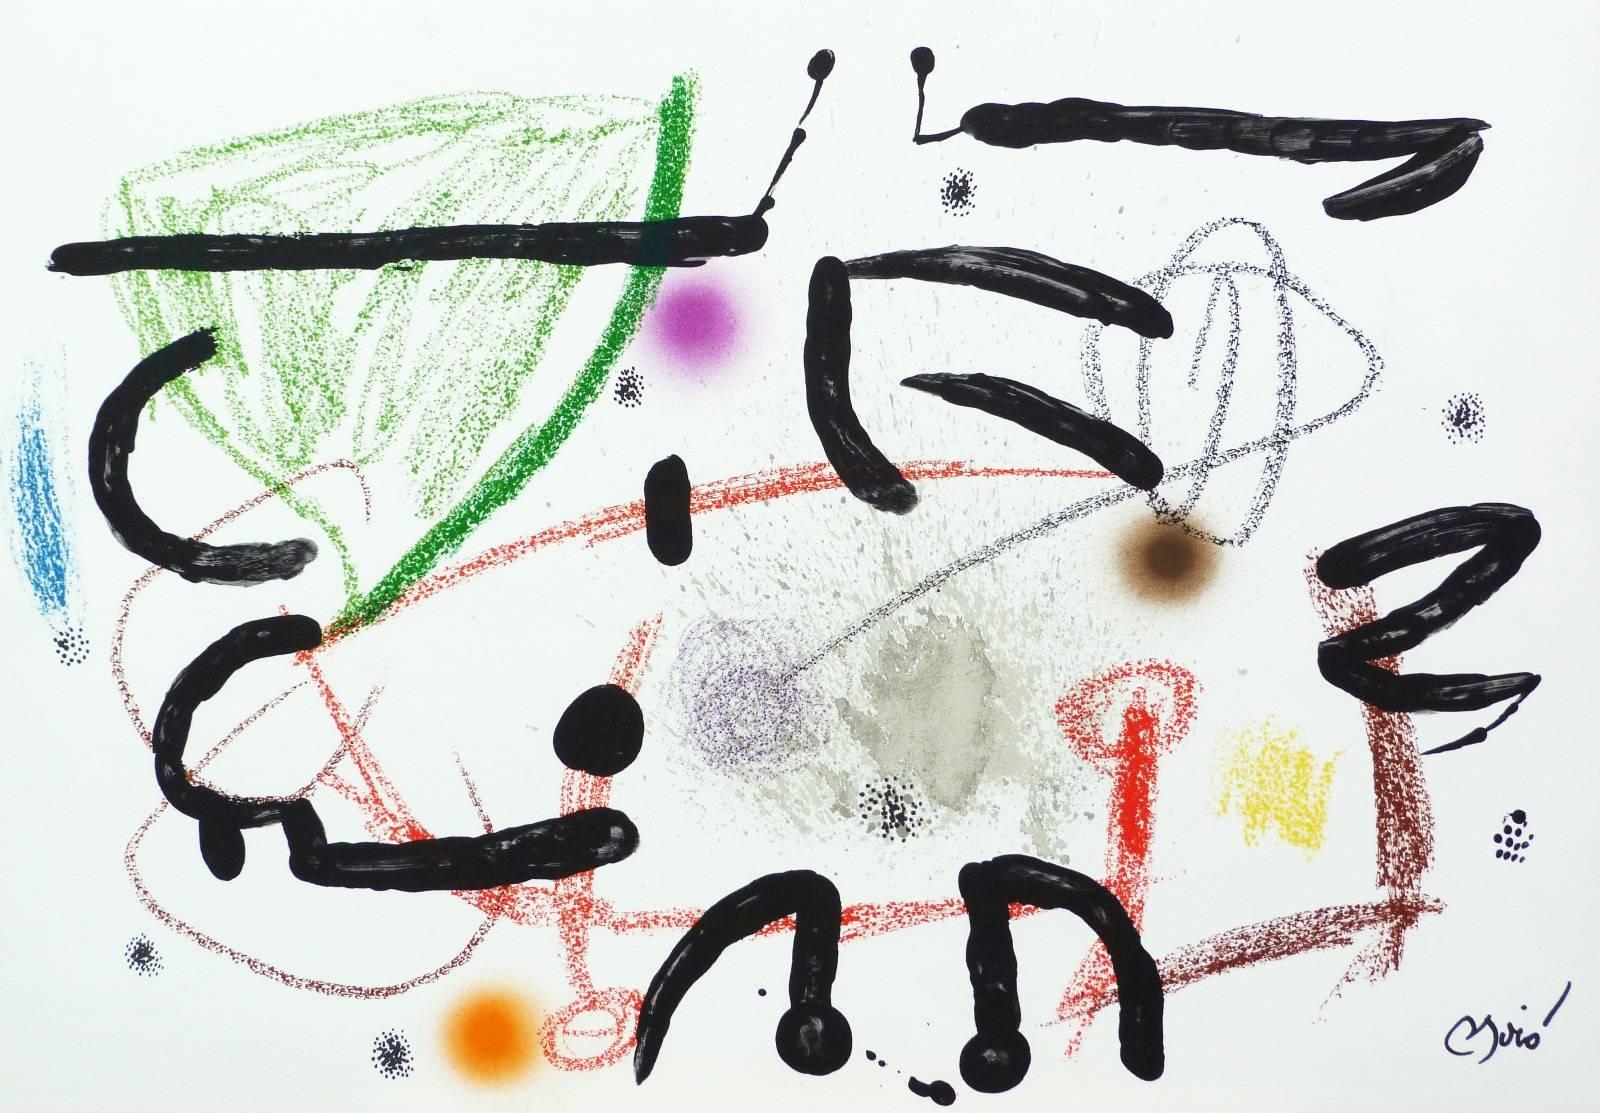 Joan Miró Abstract Print - Maravillas con variaciones acrosticas: one plate